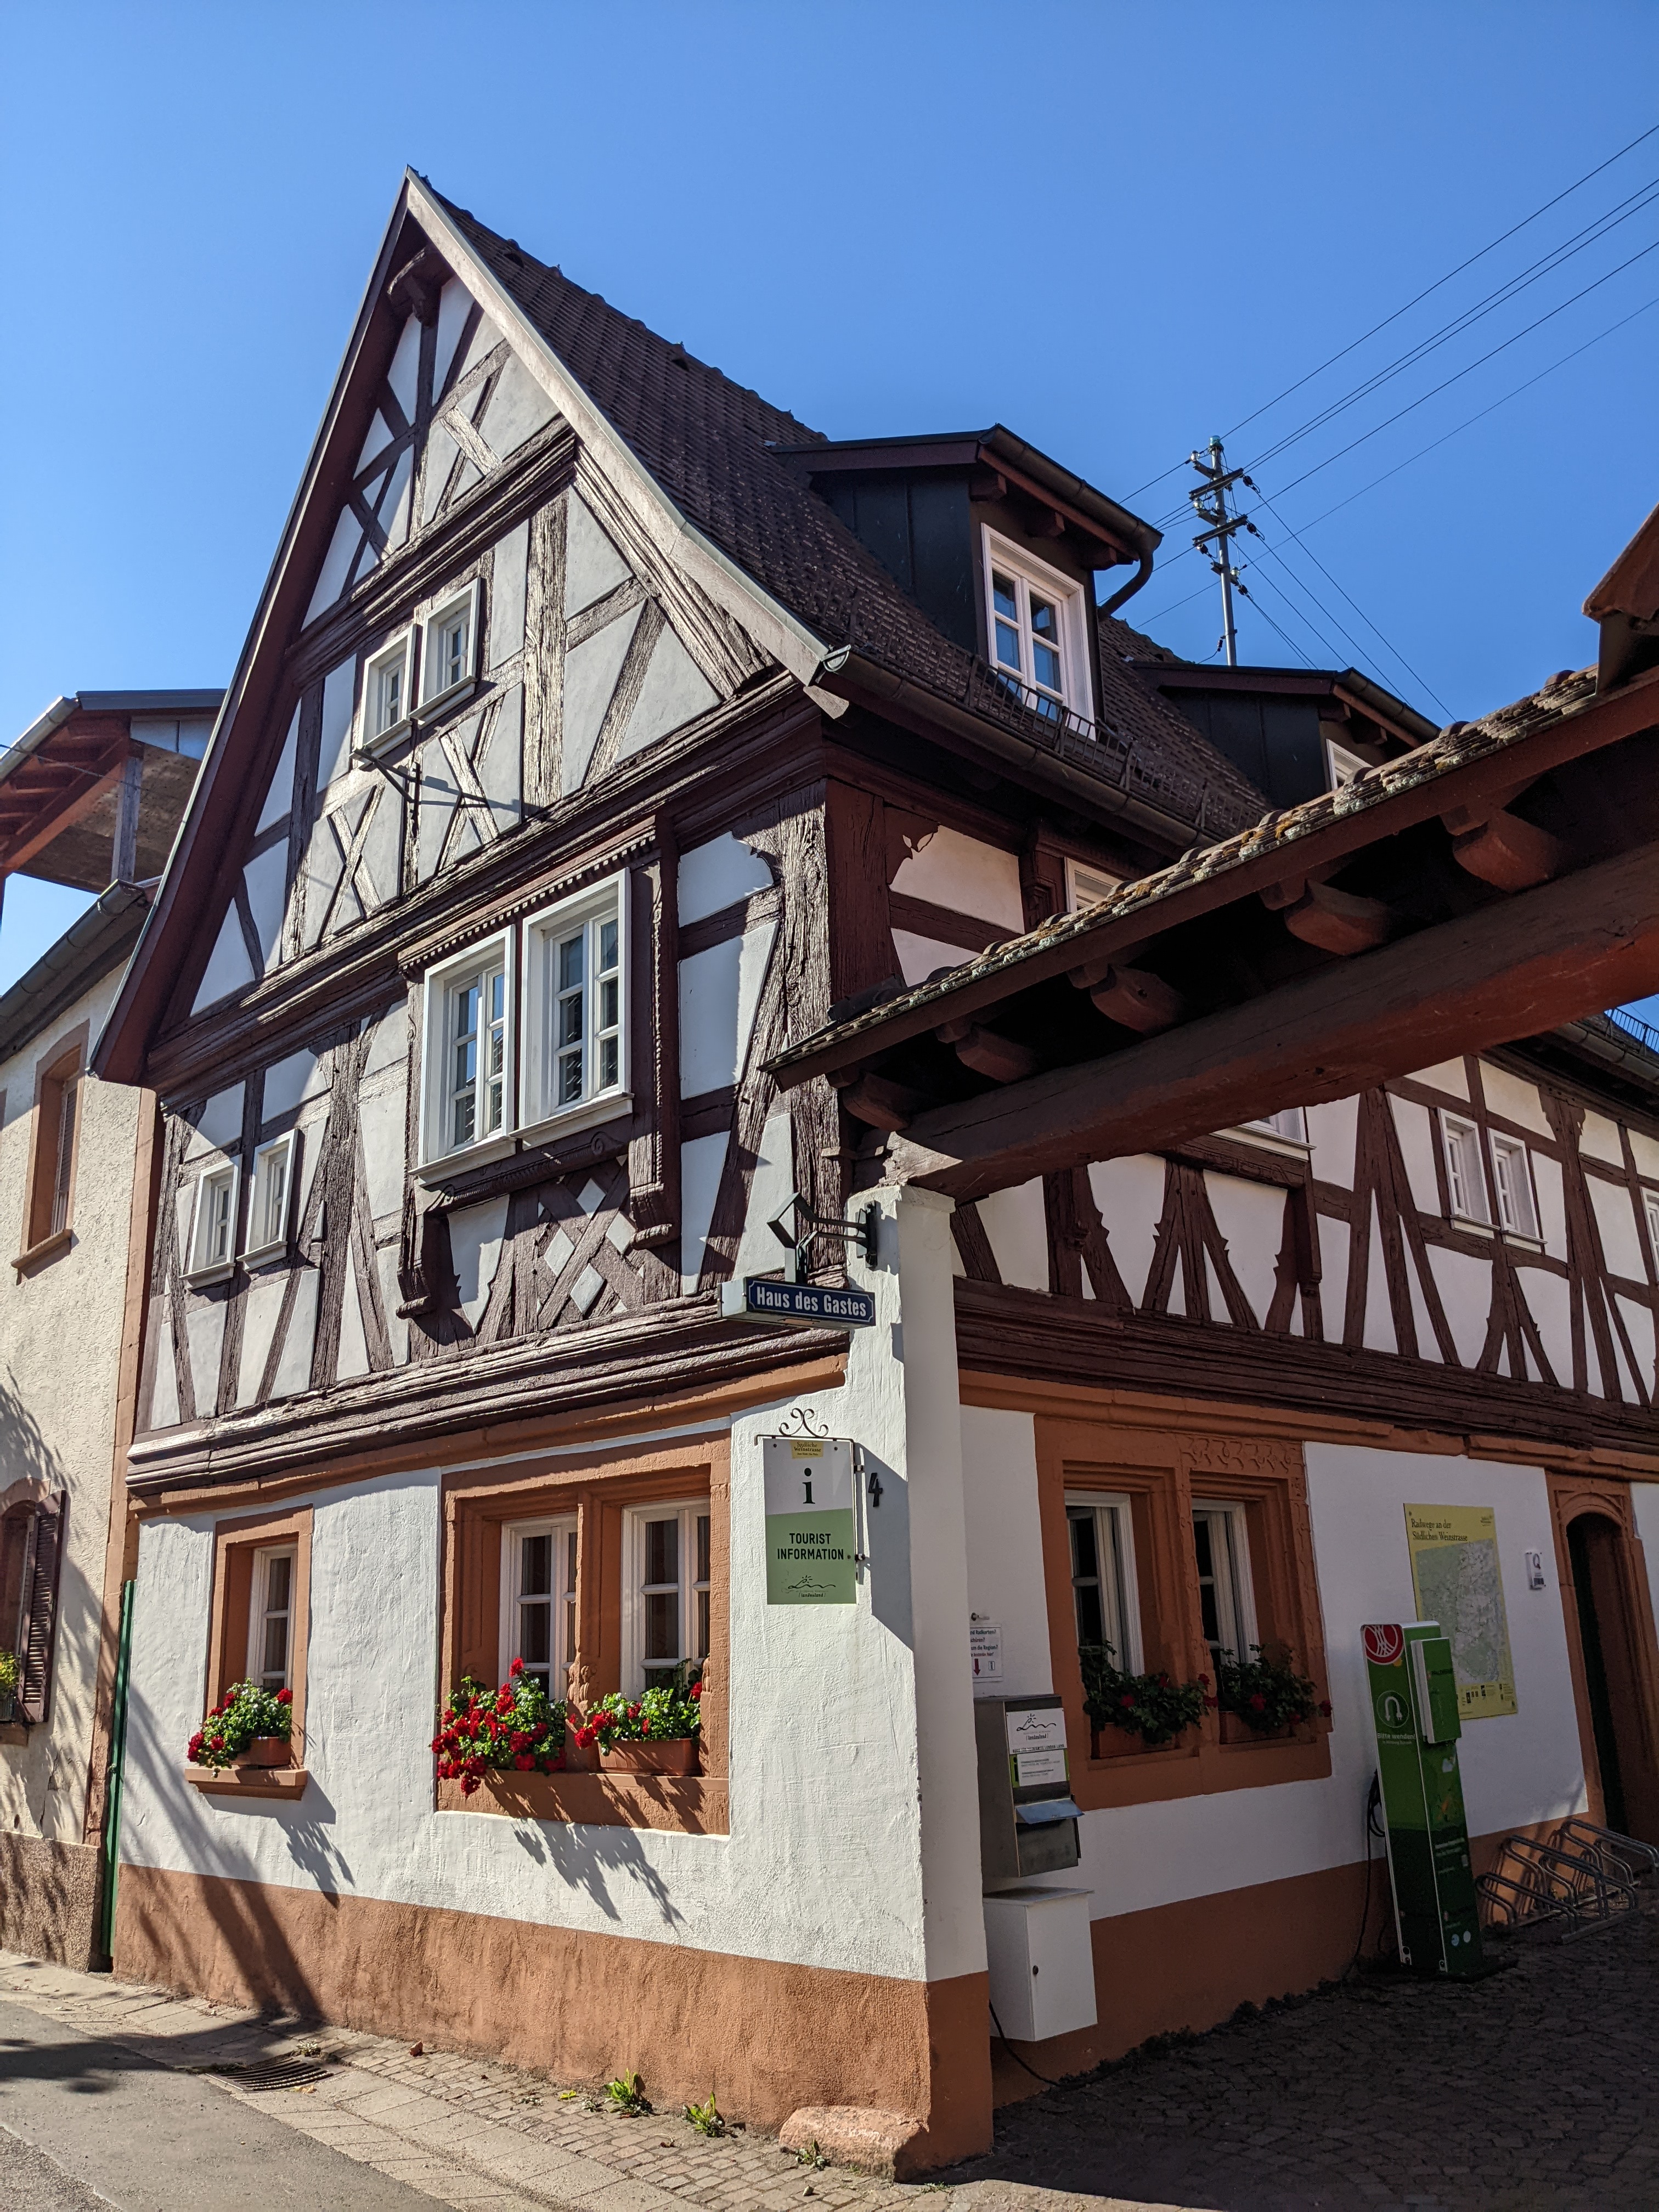 Büro für Tourismus landauland in Leinsweiler in der Pfalz